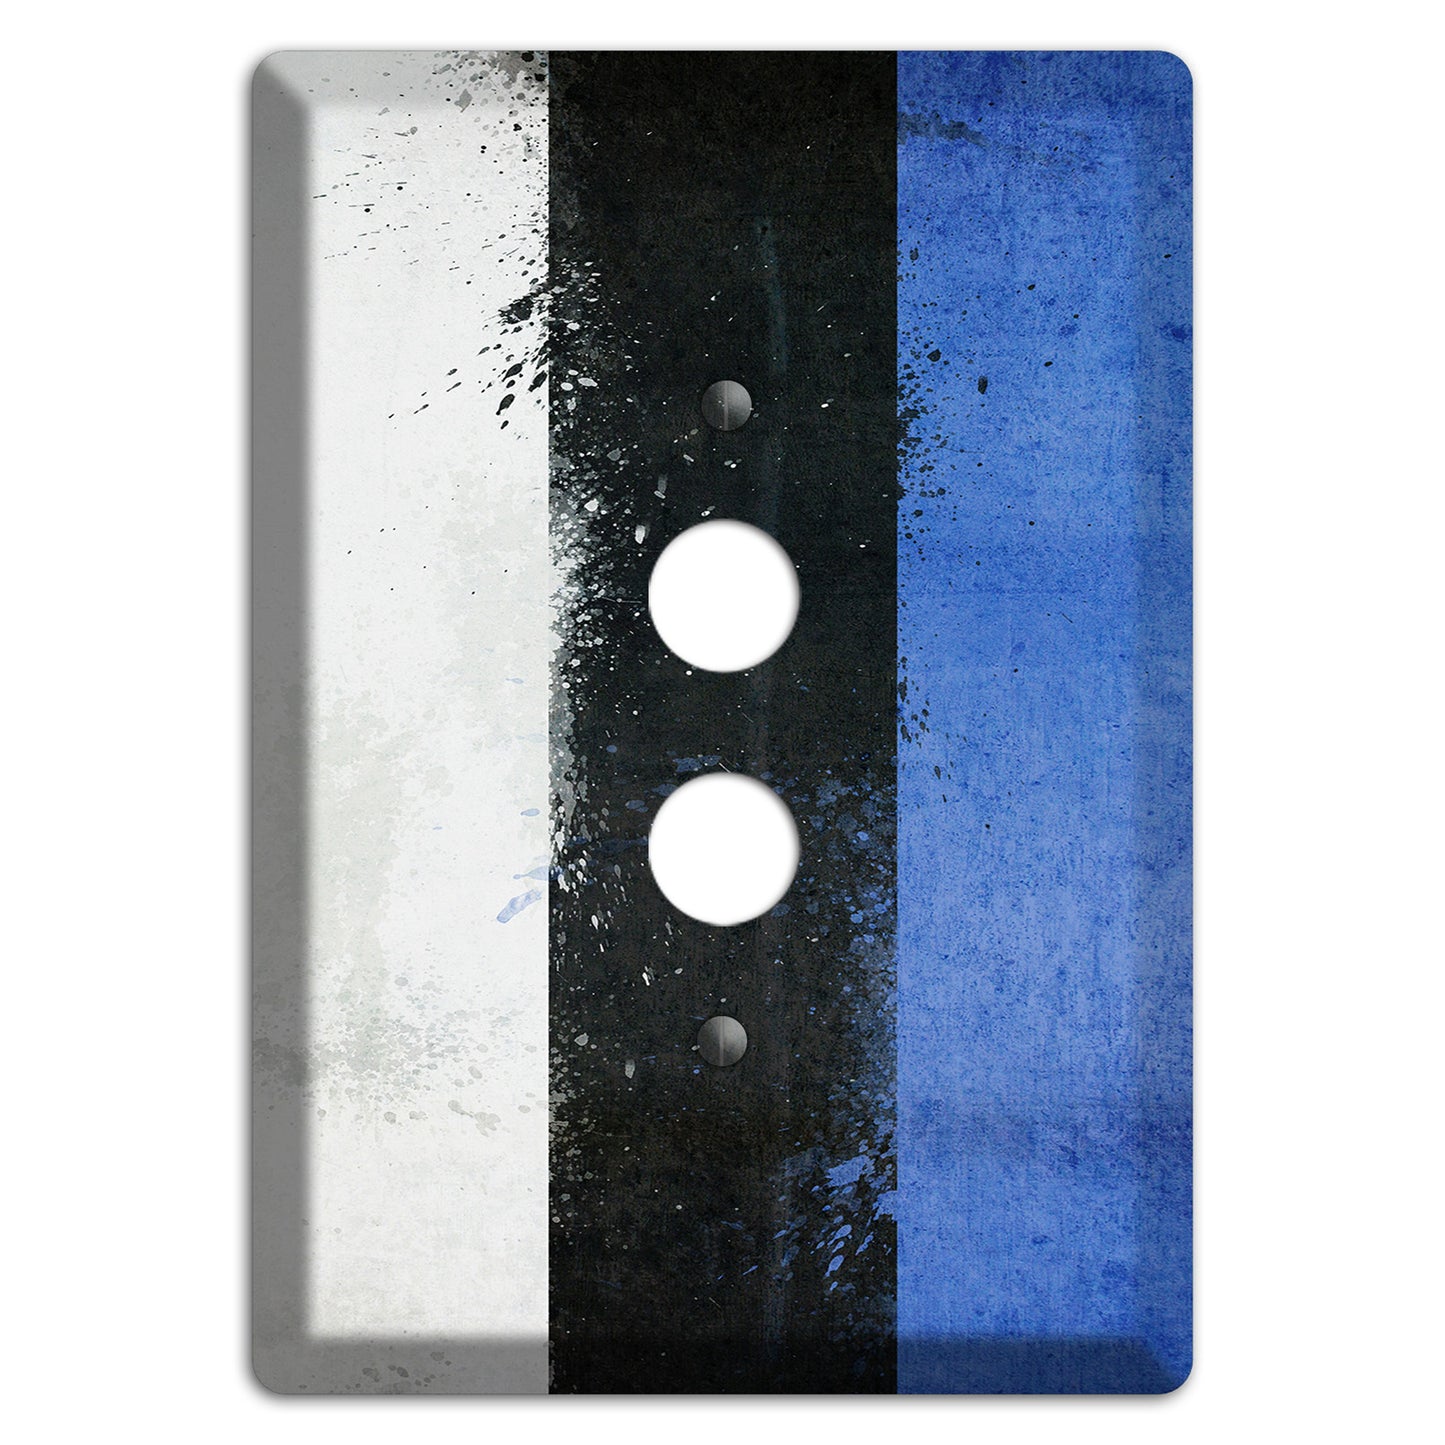 Estonia Cover Plates 1 Pushbutton Wallplate